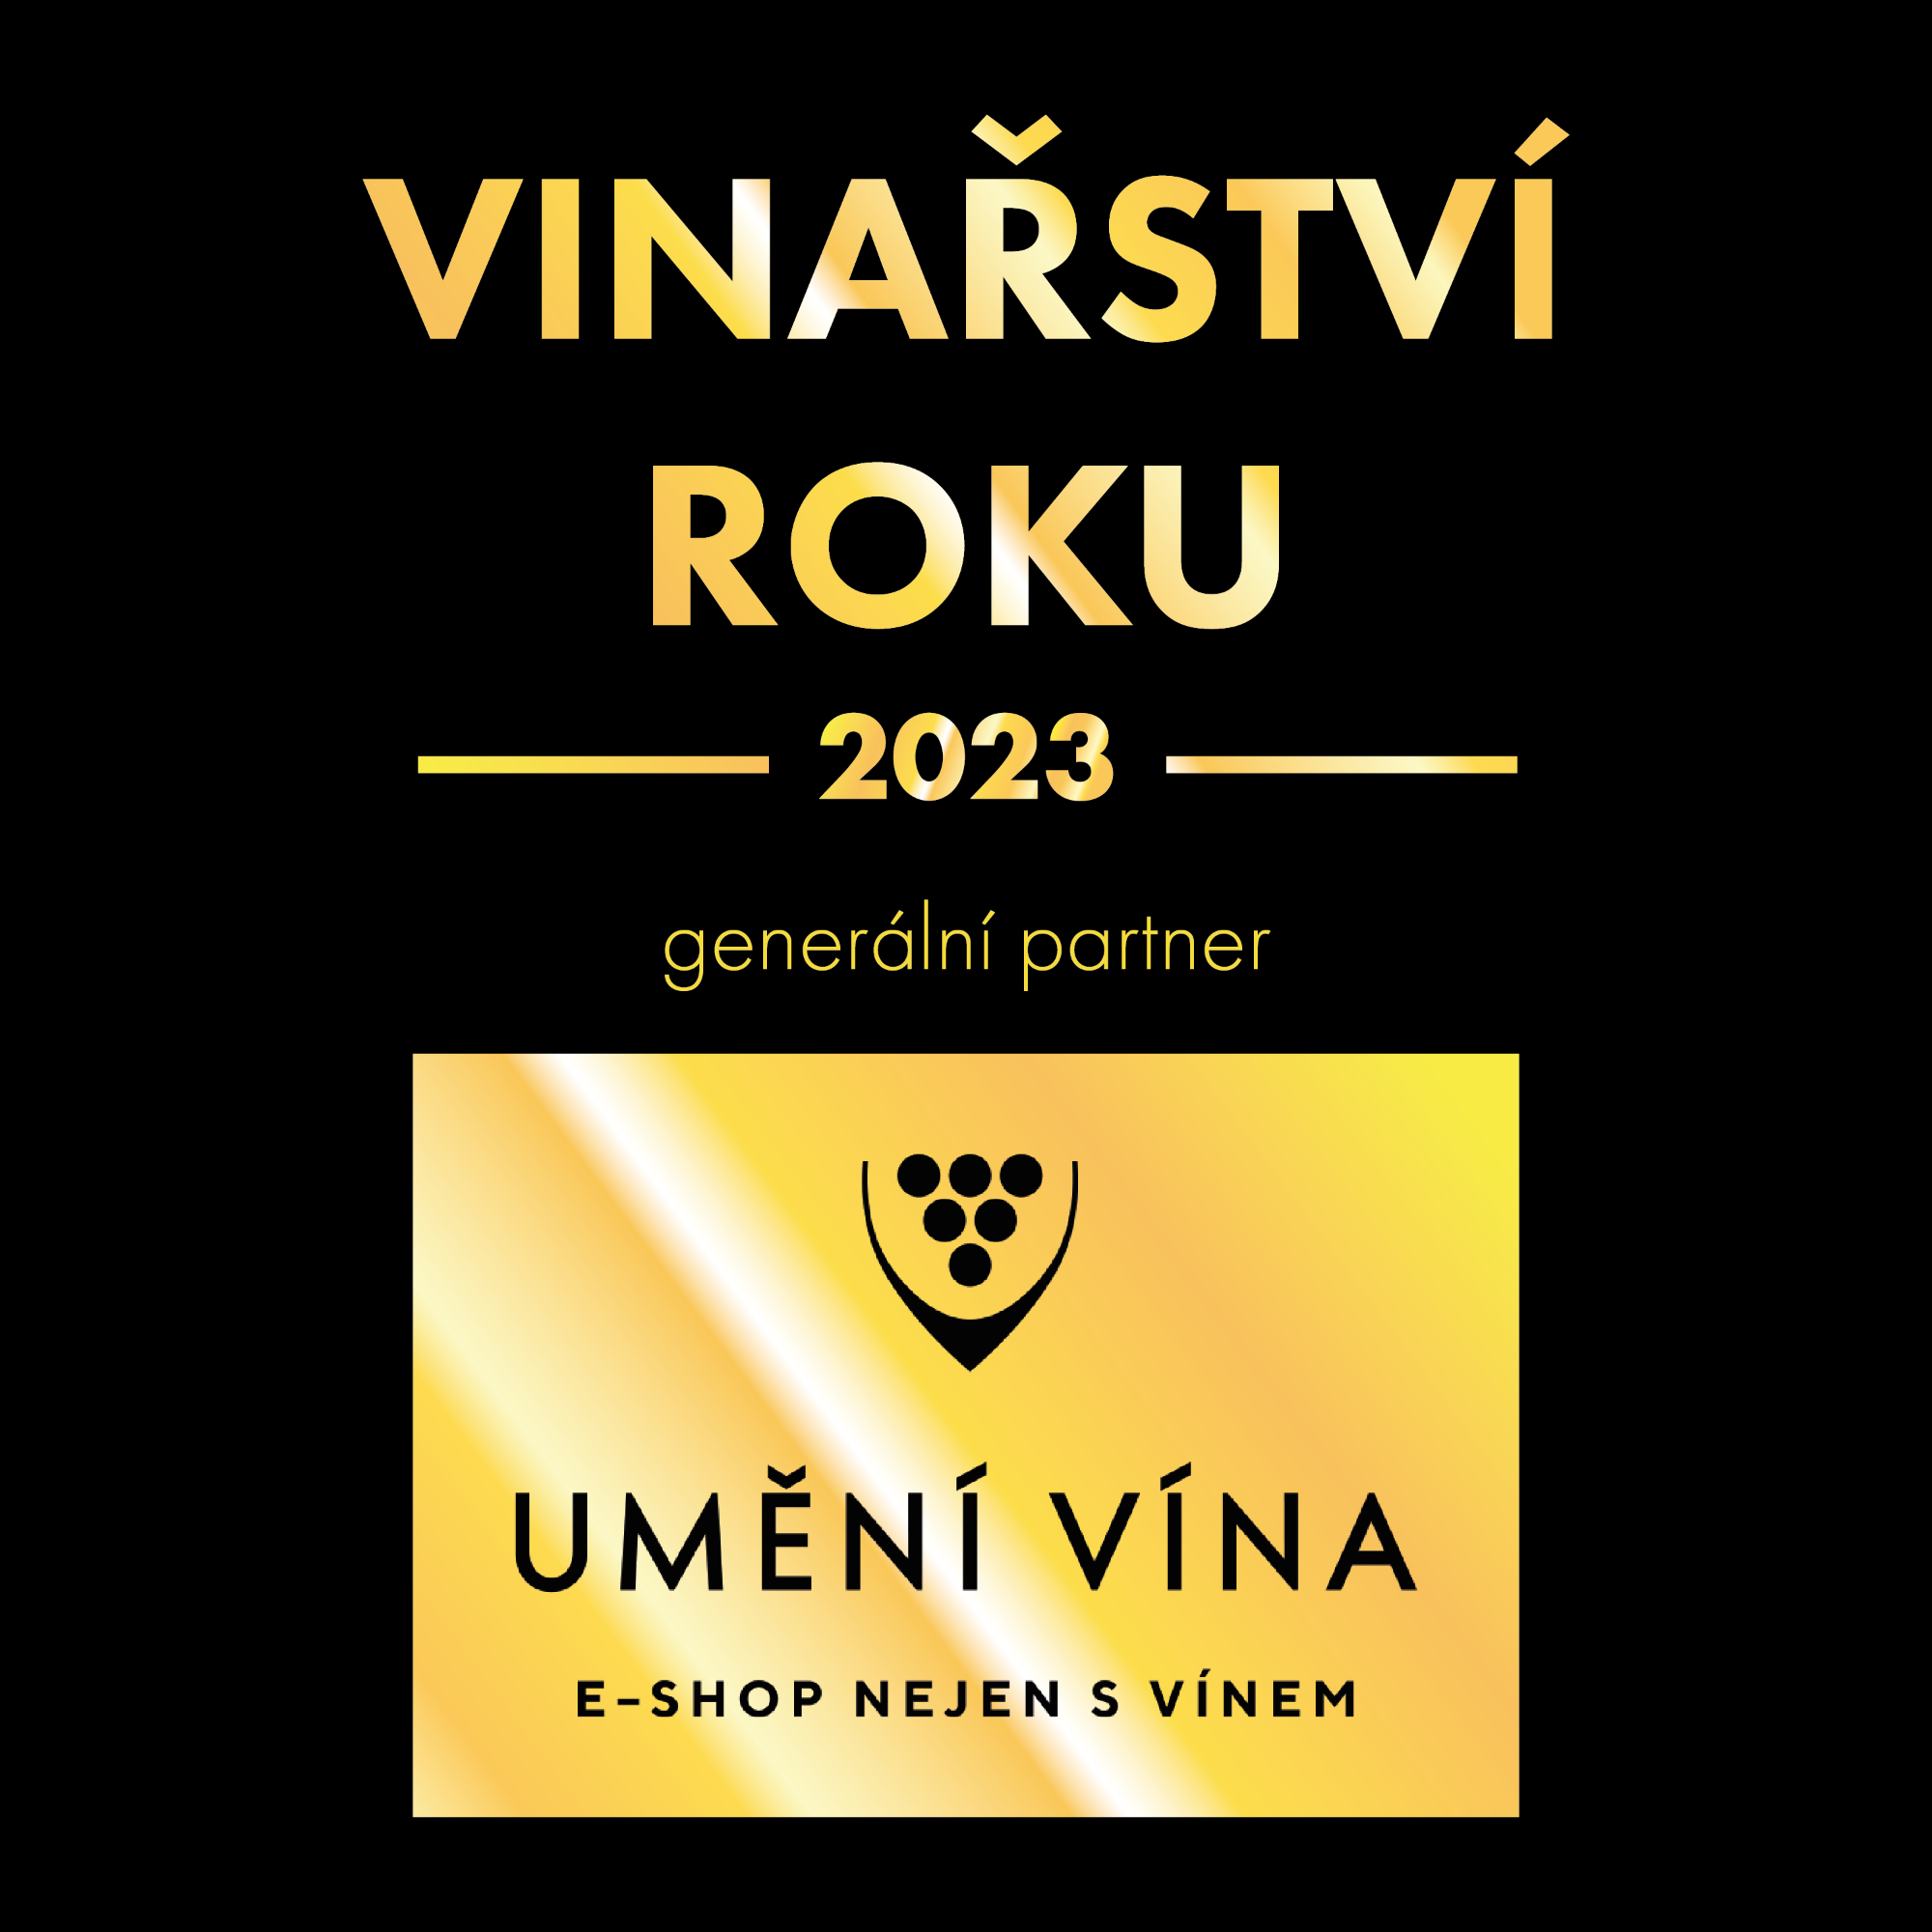 Vinařství roku 2023 - výzva pro vinaře